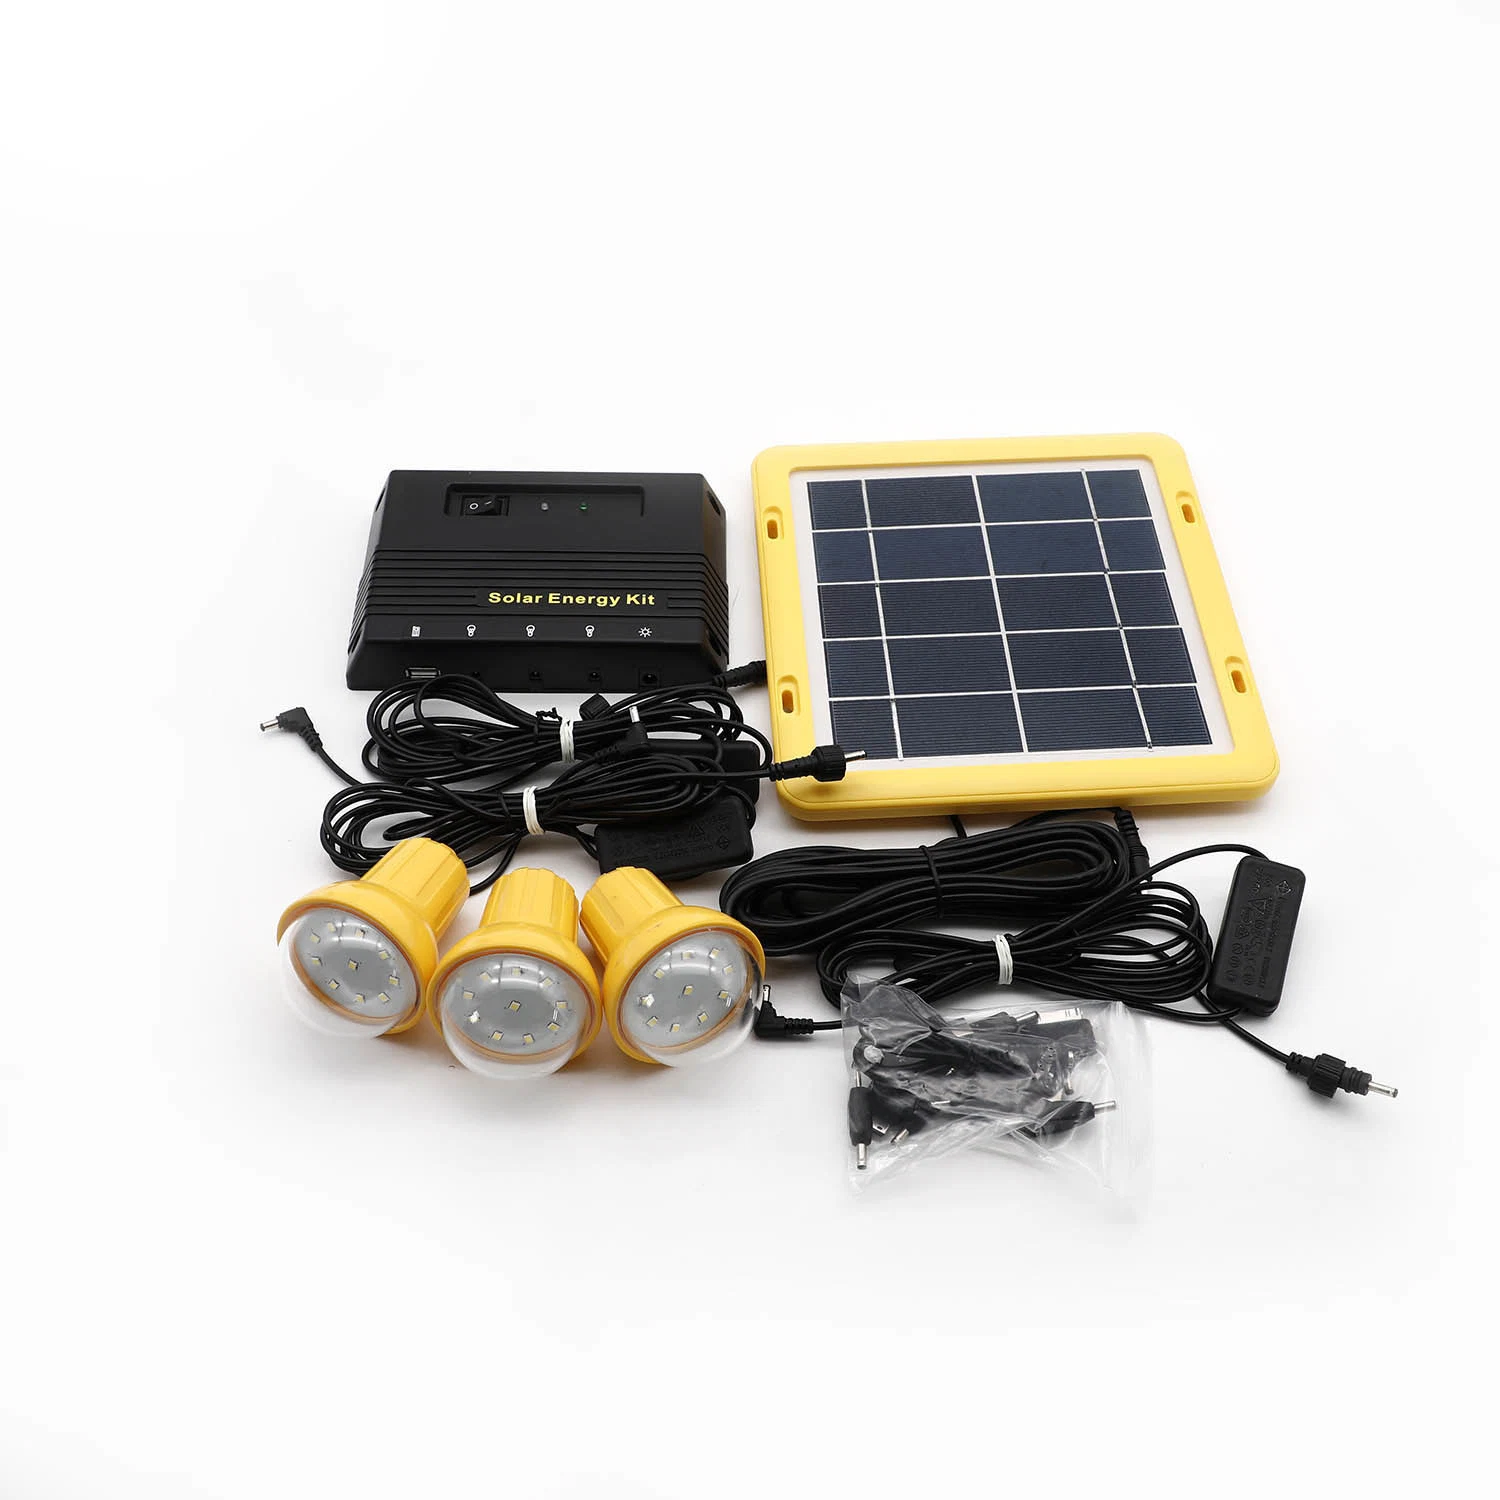 3 luz de LED/USB do Sistema de Iluminação Solar Luz Kit com carregador de telemóvel